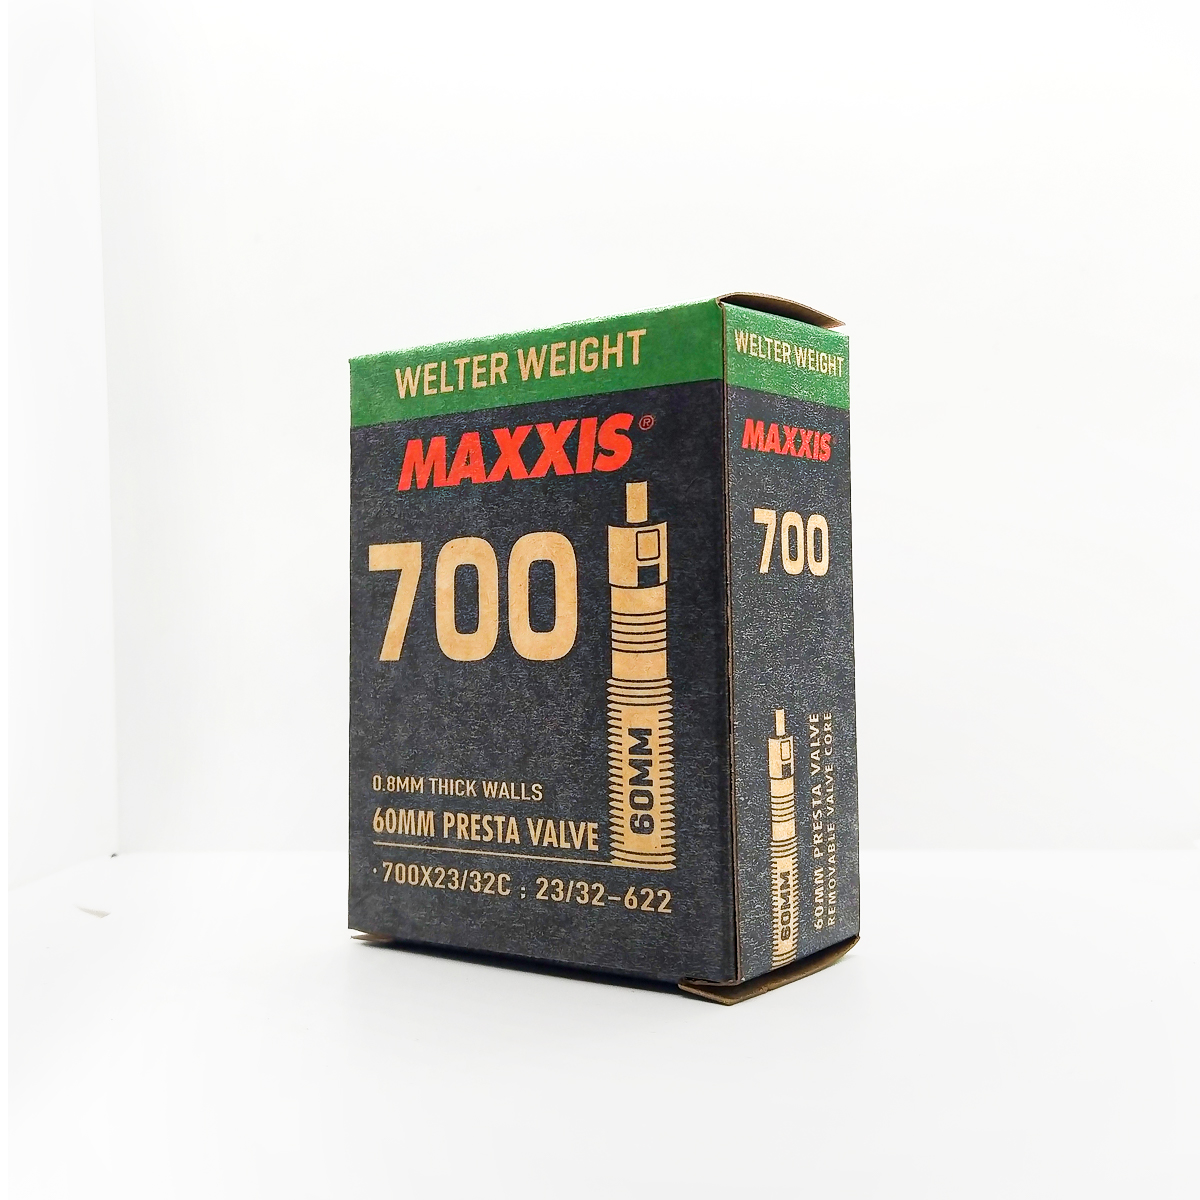 Cámara Maxxis 700 Presta 60 mm WELTER WEIGHT (23/32 c)